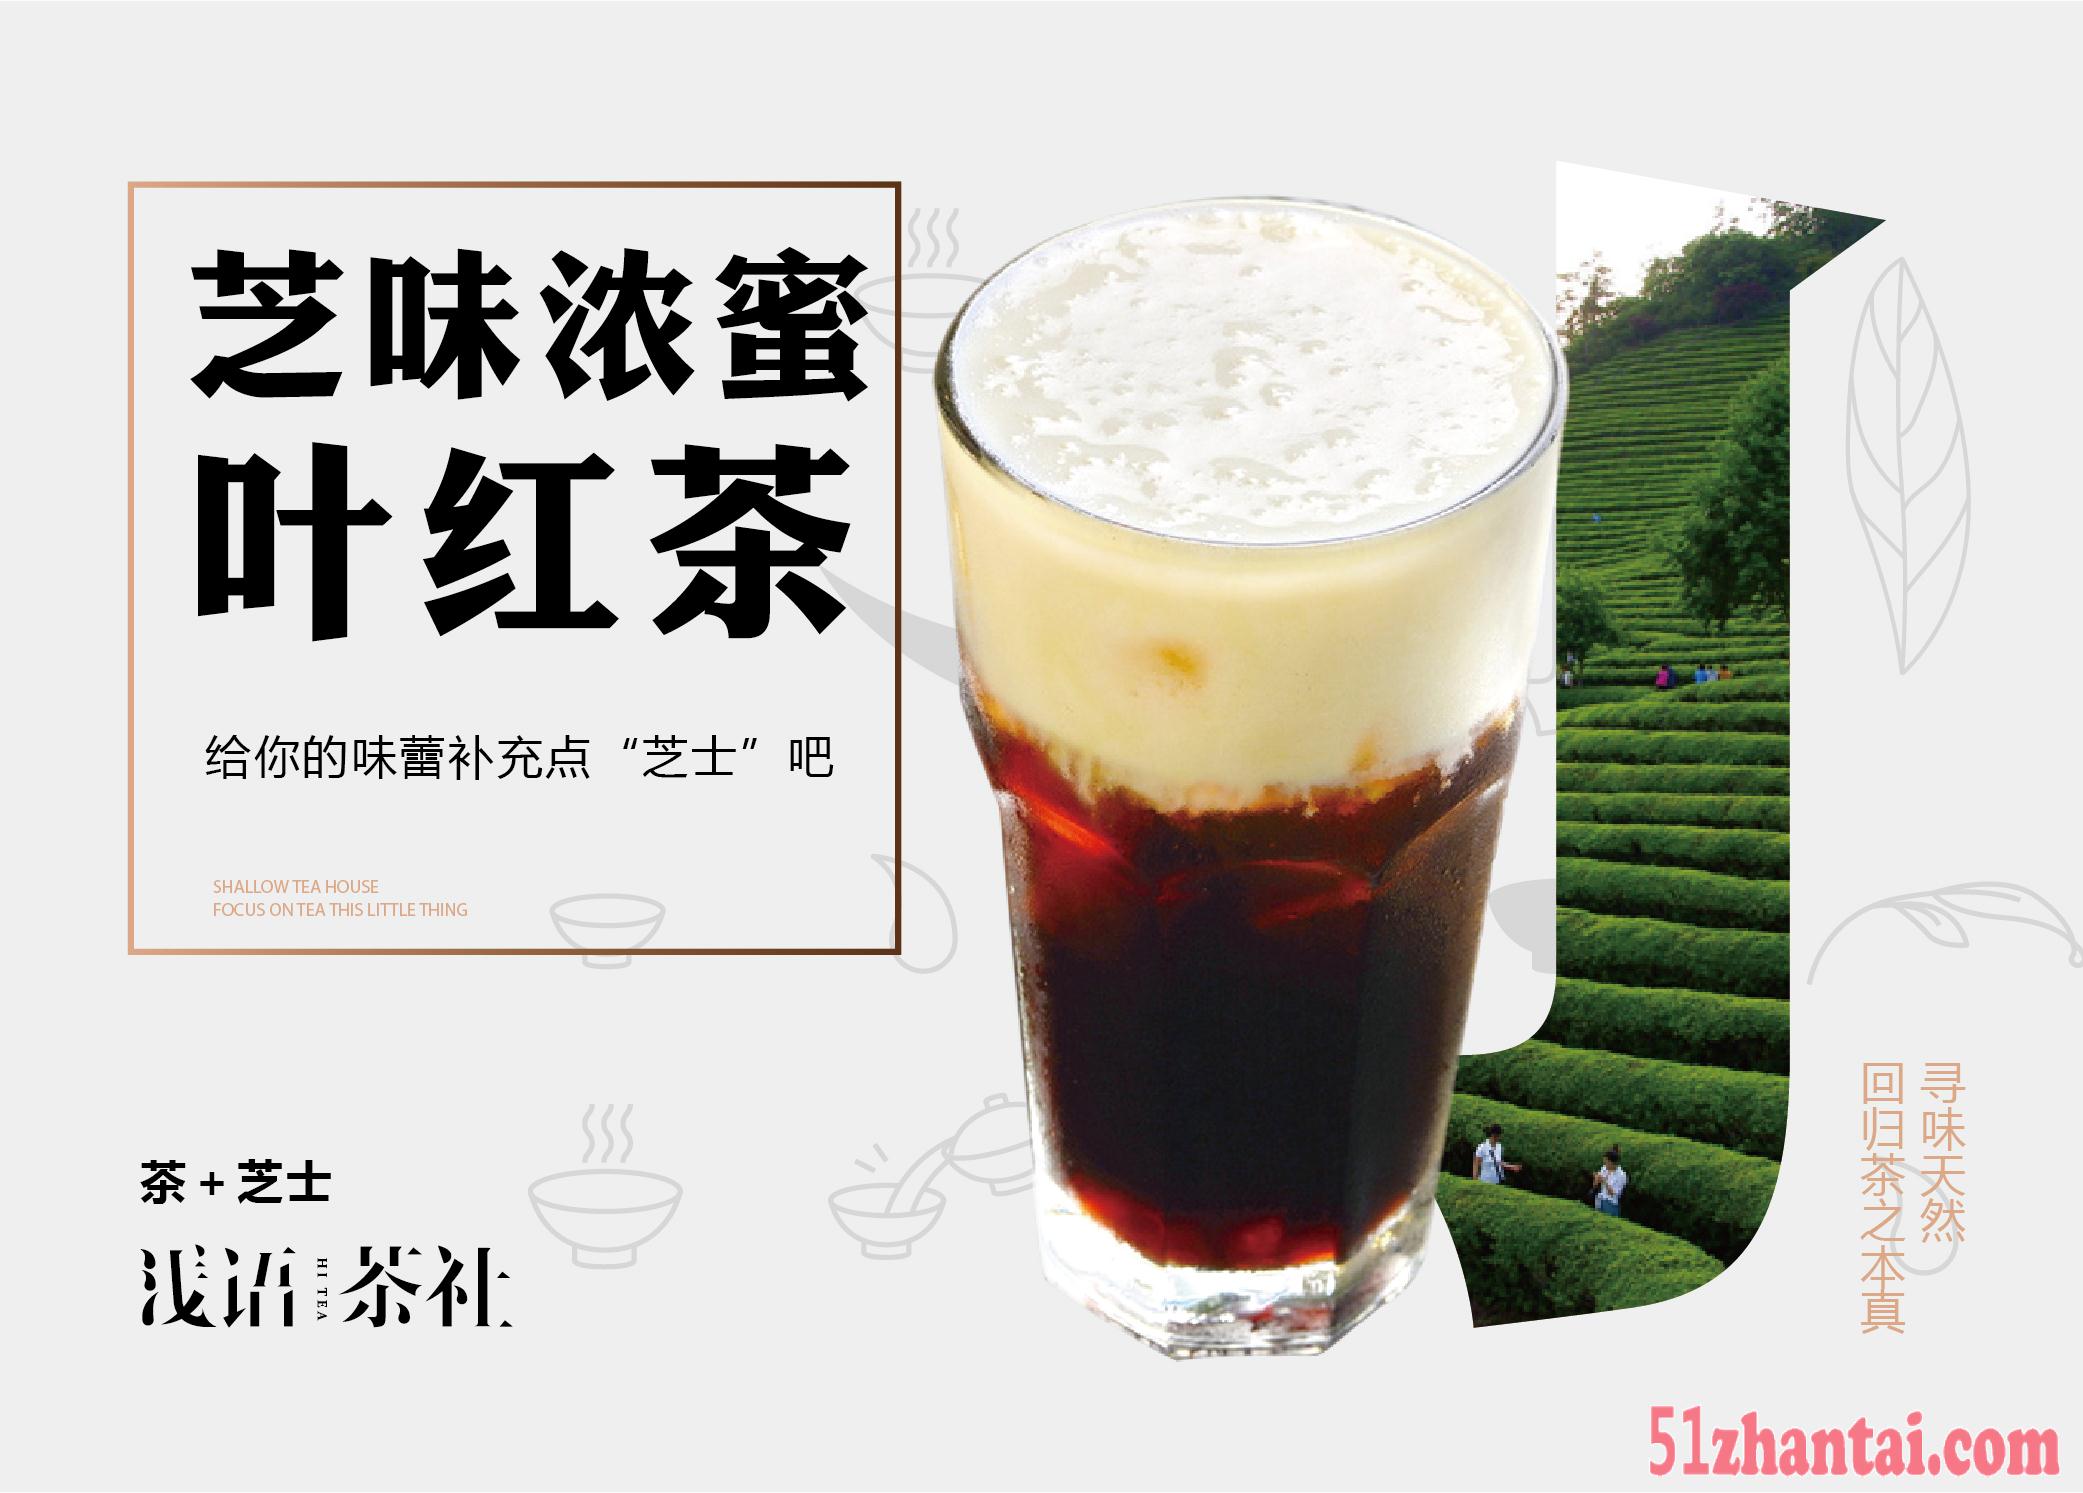 广州冷饮茶饮店加盟,浅语茶社饮料利润翻倍-图1